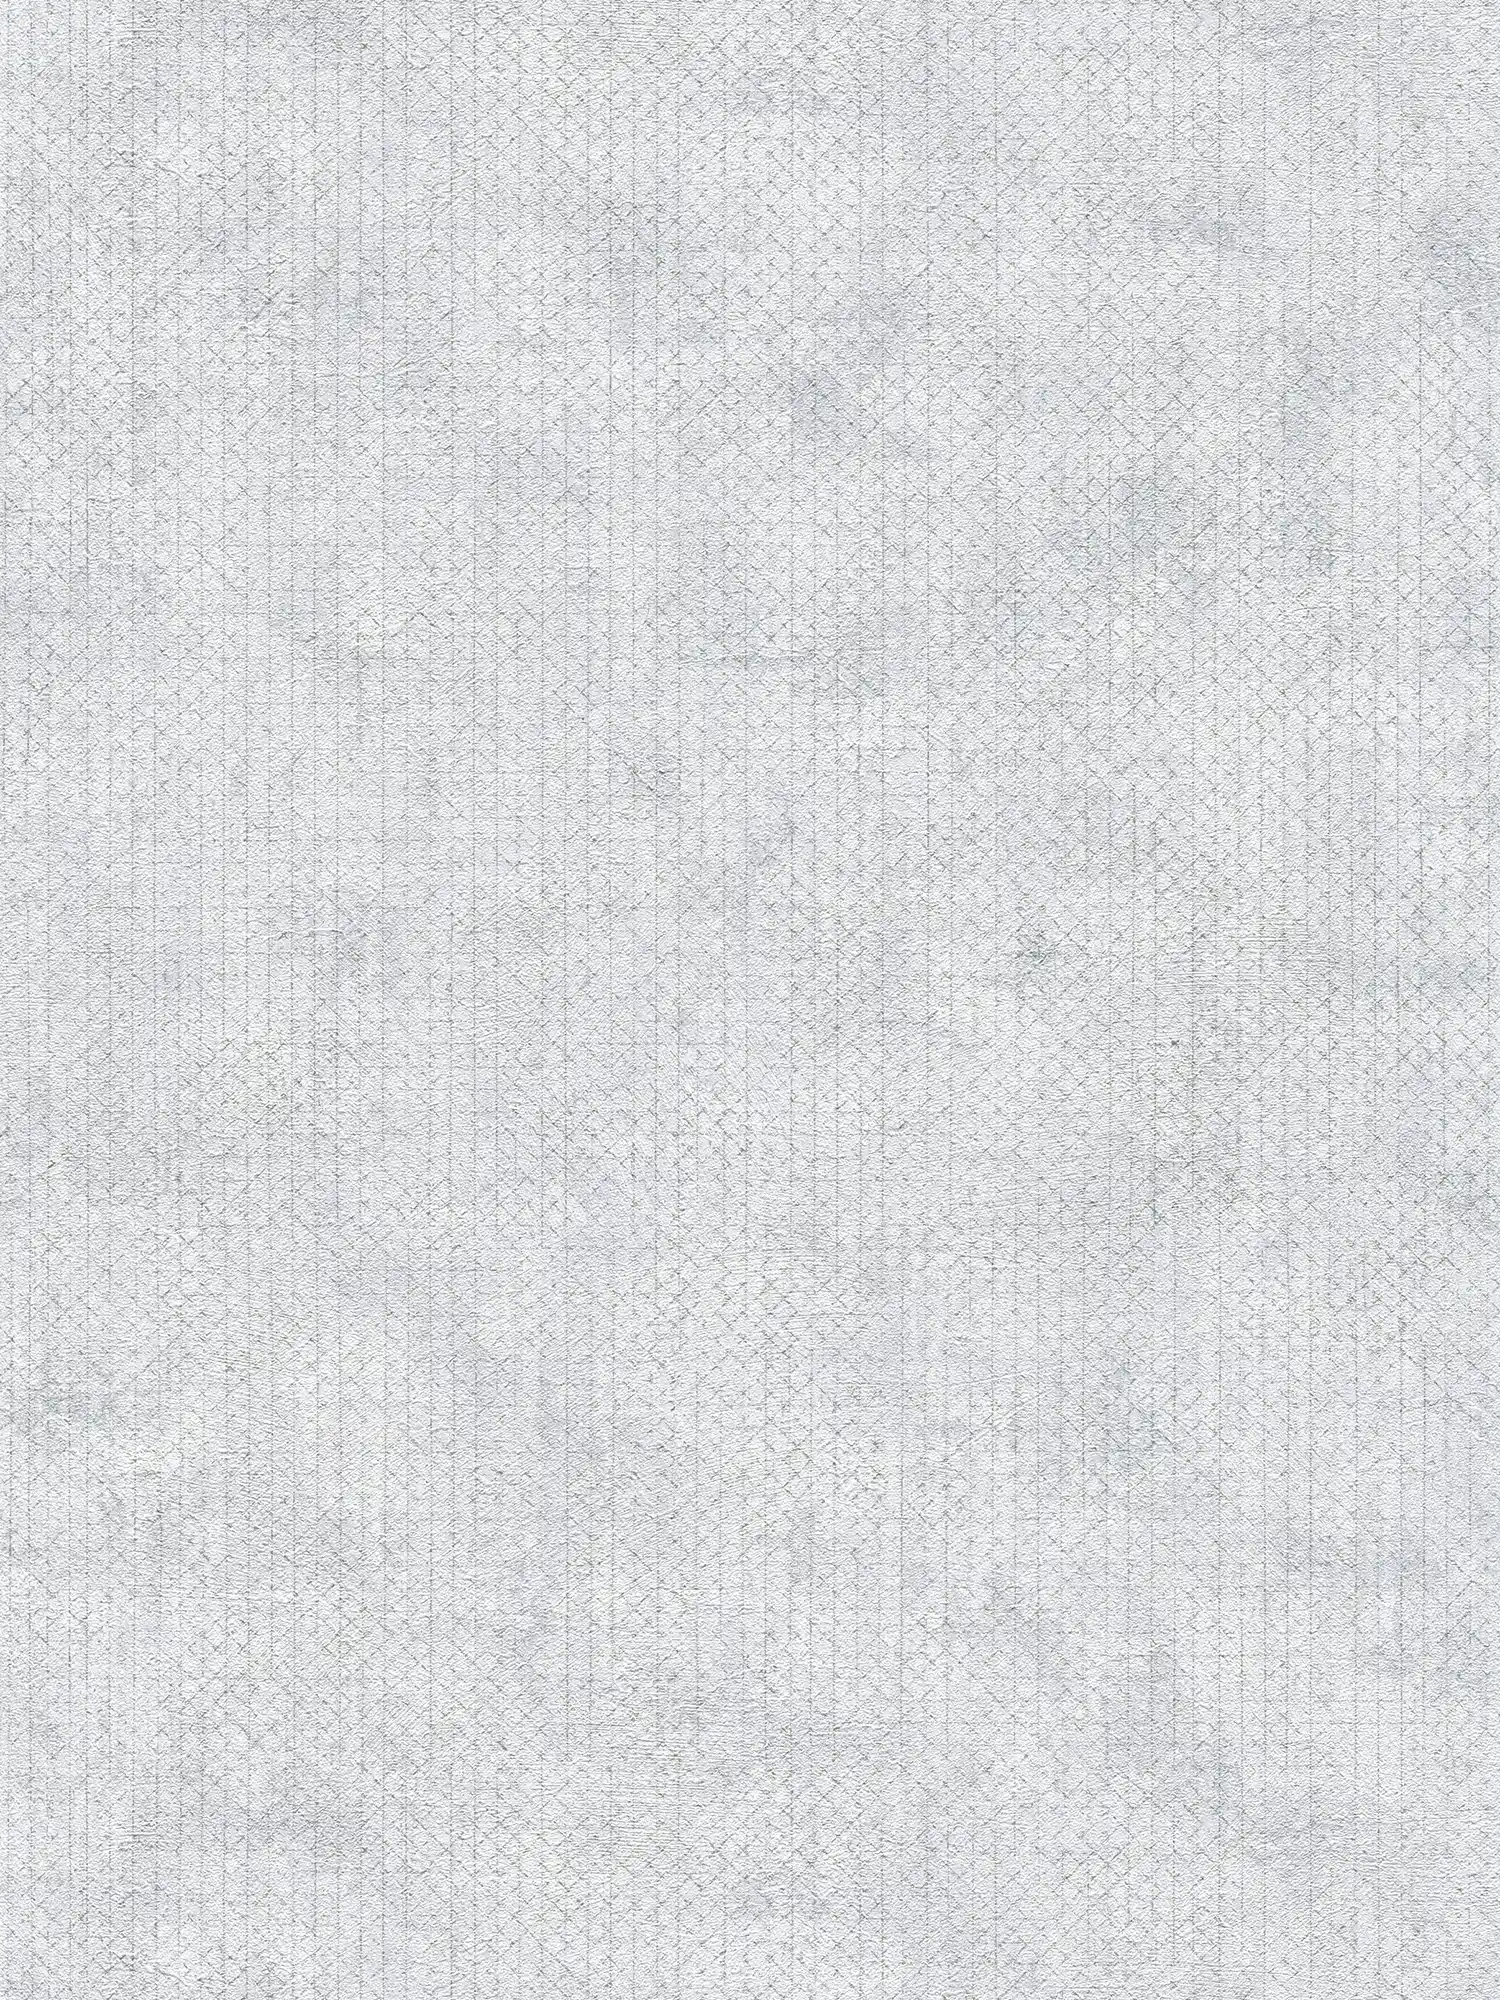 Papel pintado gris claro con motivos metálicos - Metálico, Gris
